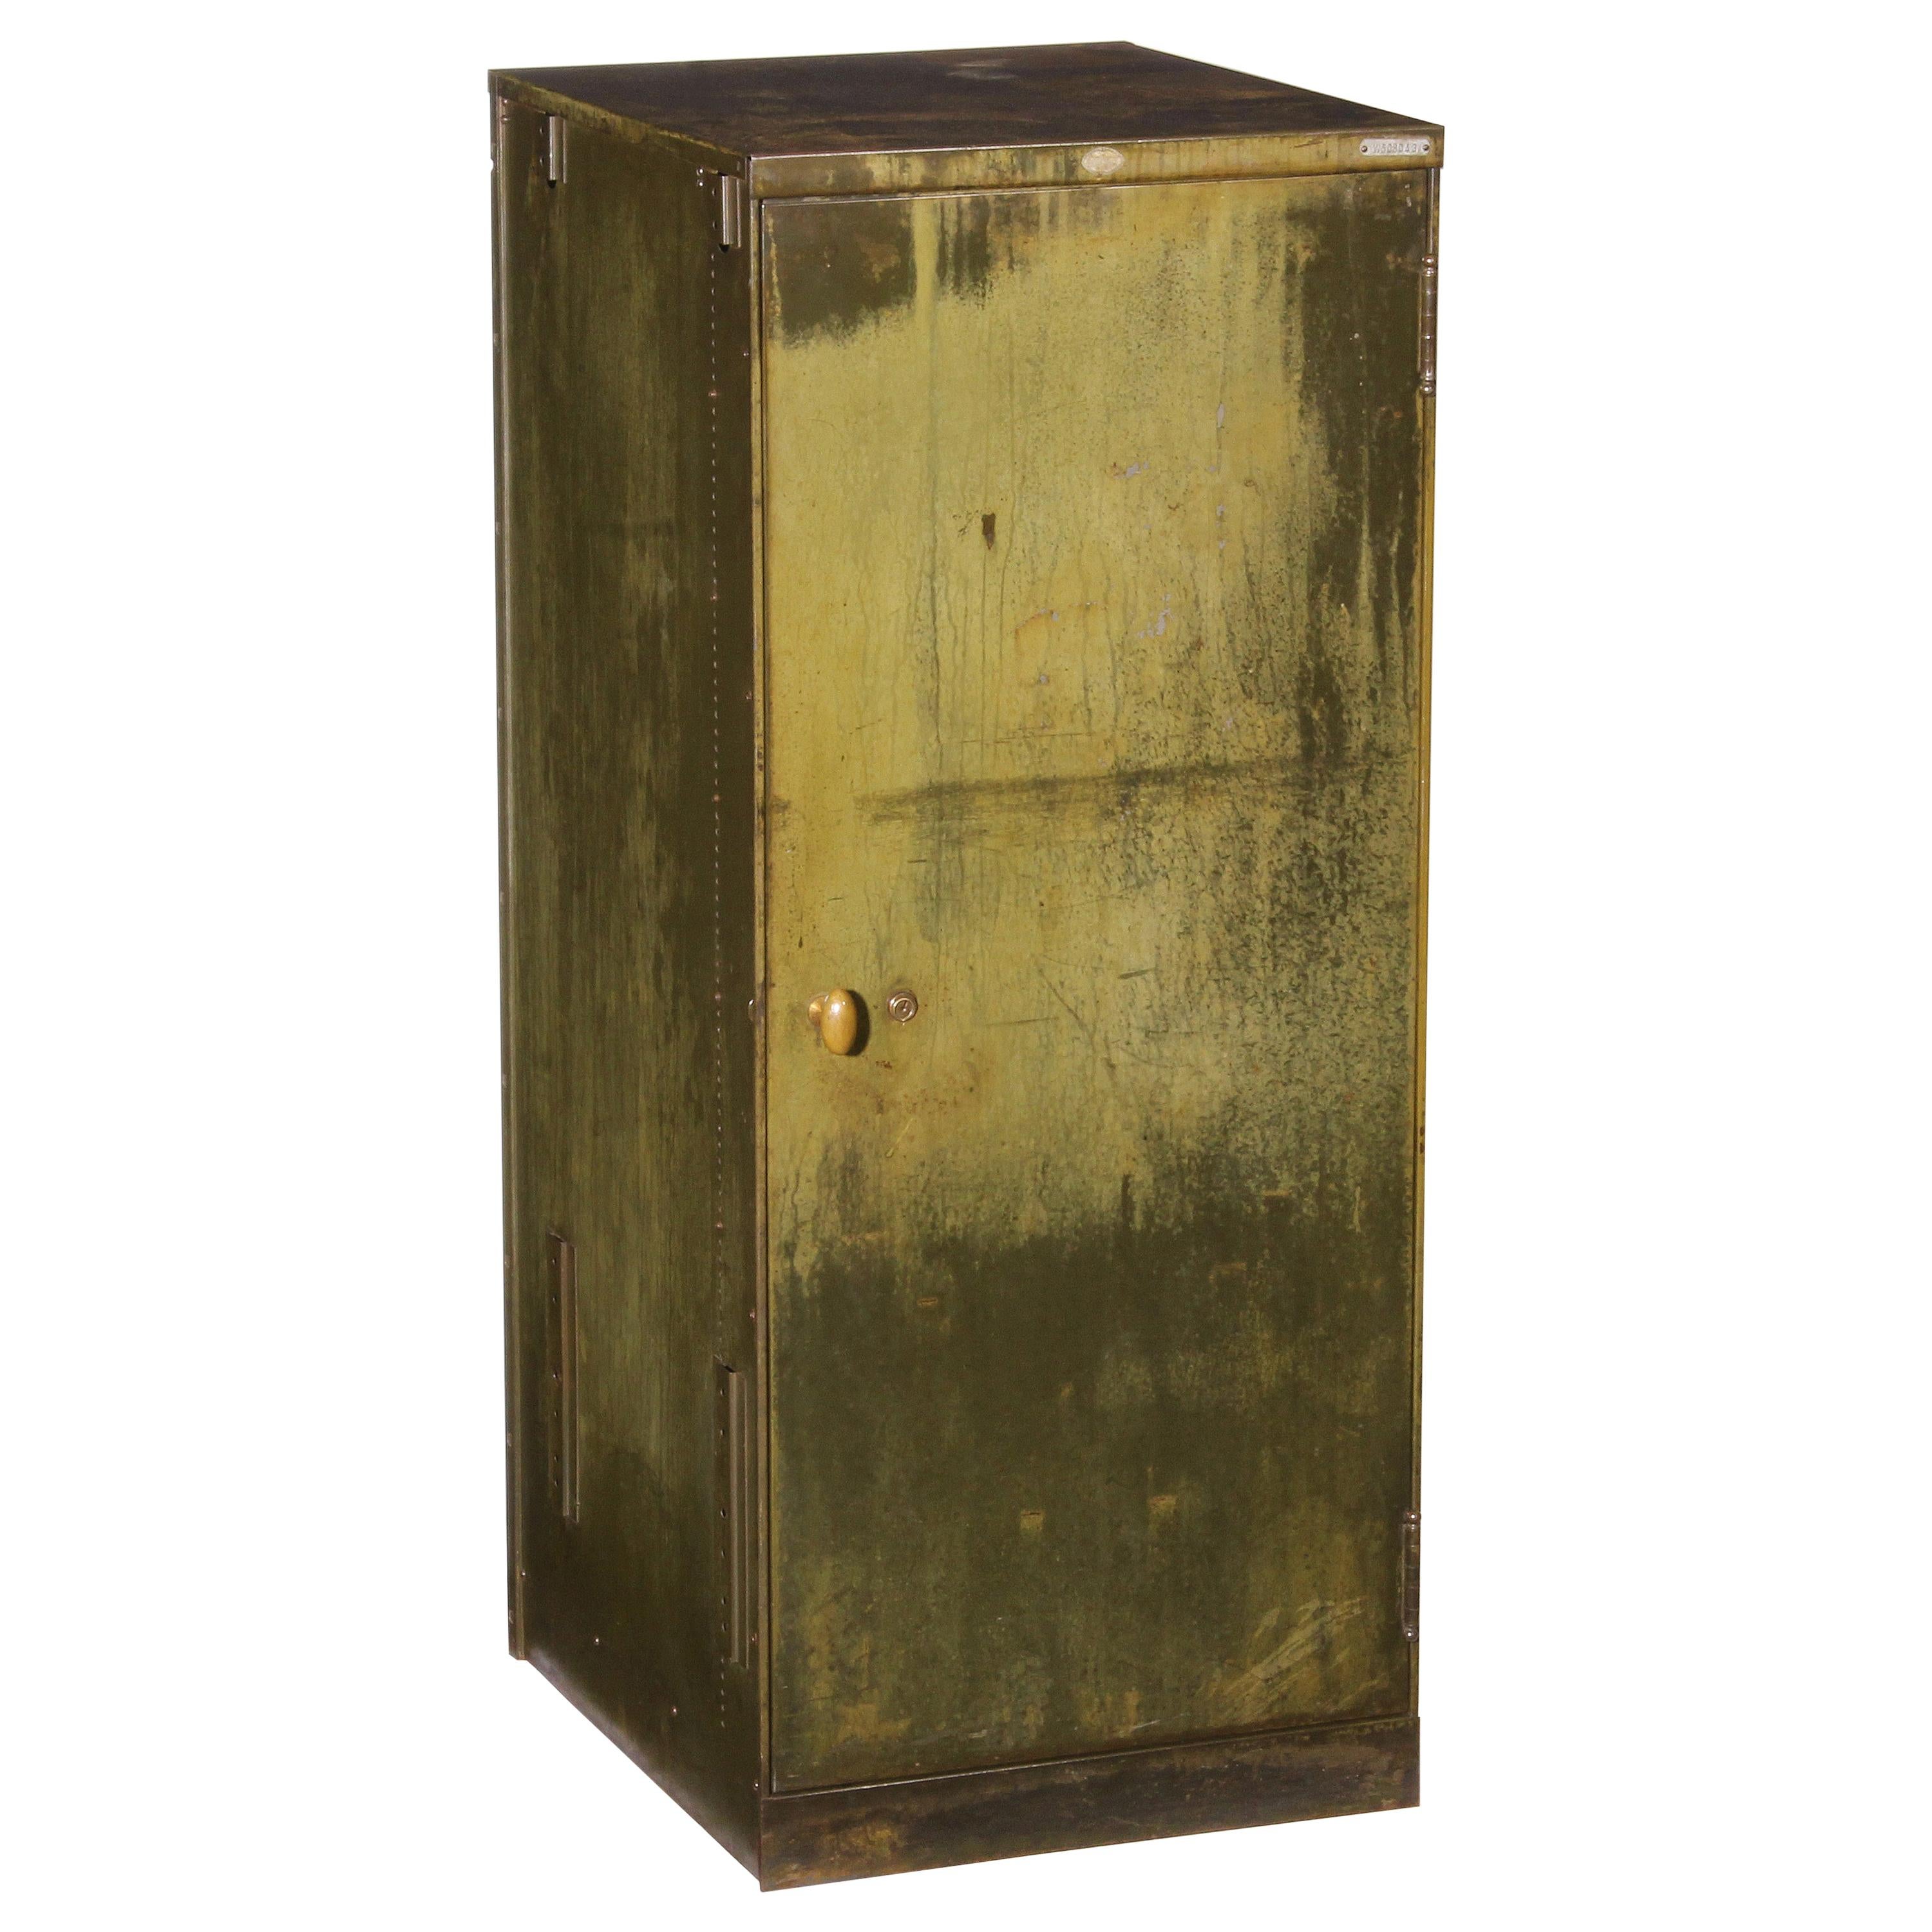 Vintage Industrial Steel Cabinet